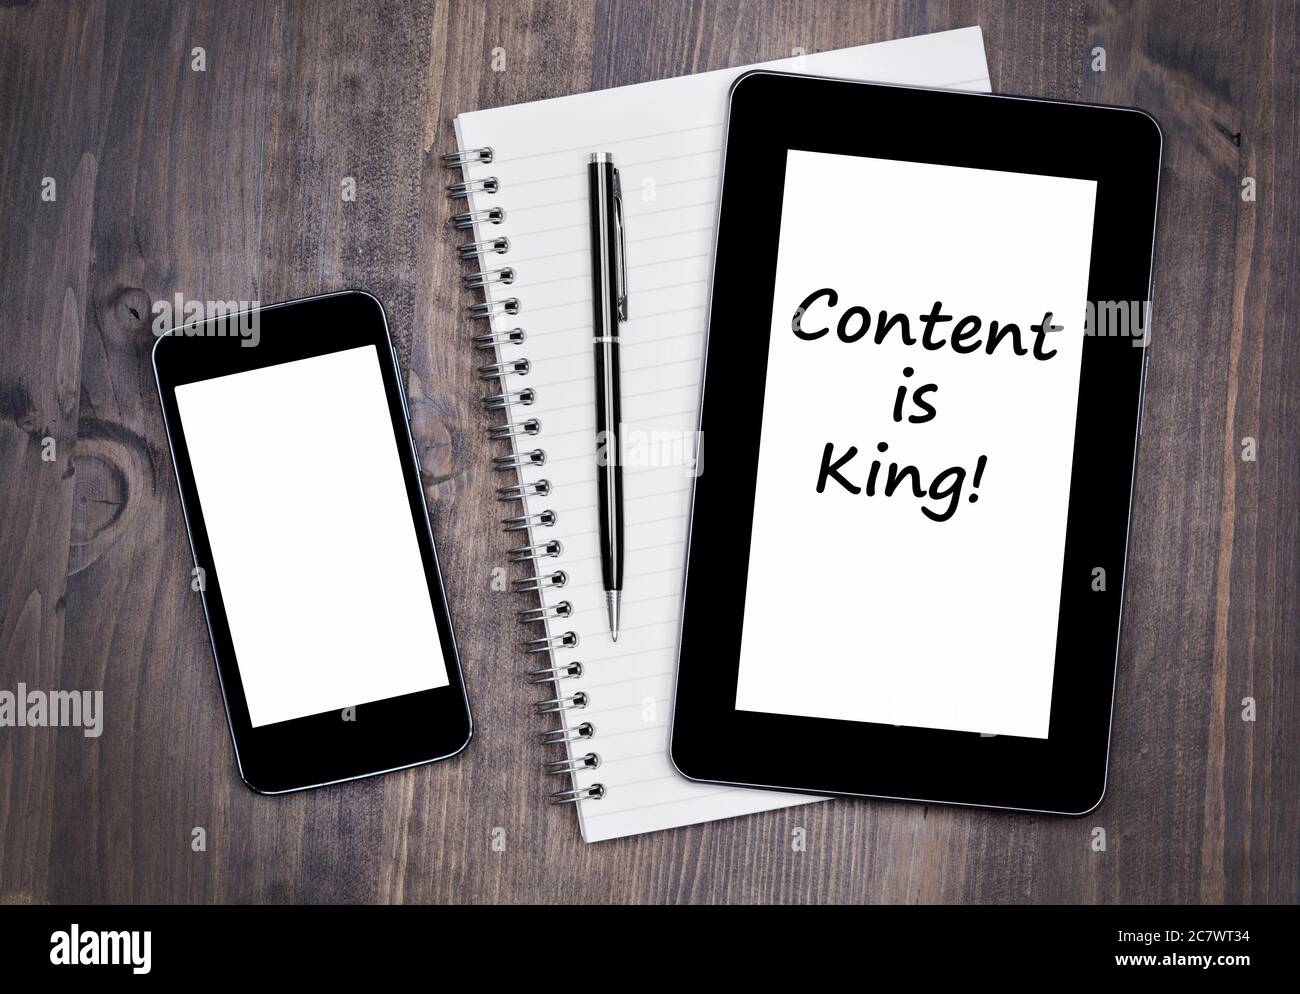 Das Konzept ist König! Text auf Tablet-Gerät auf einem Holztablett Stockfoto